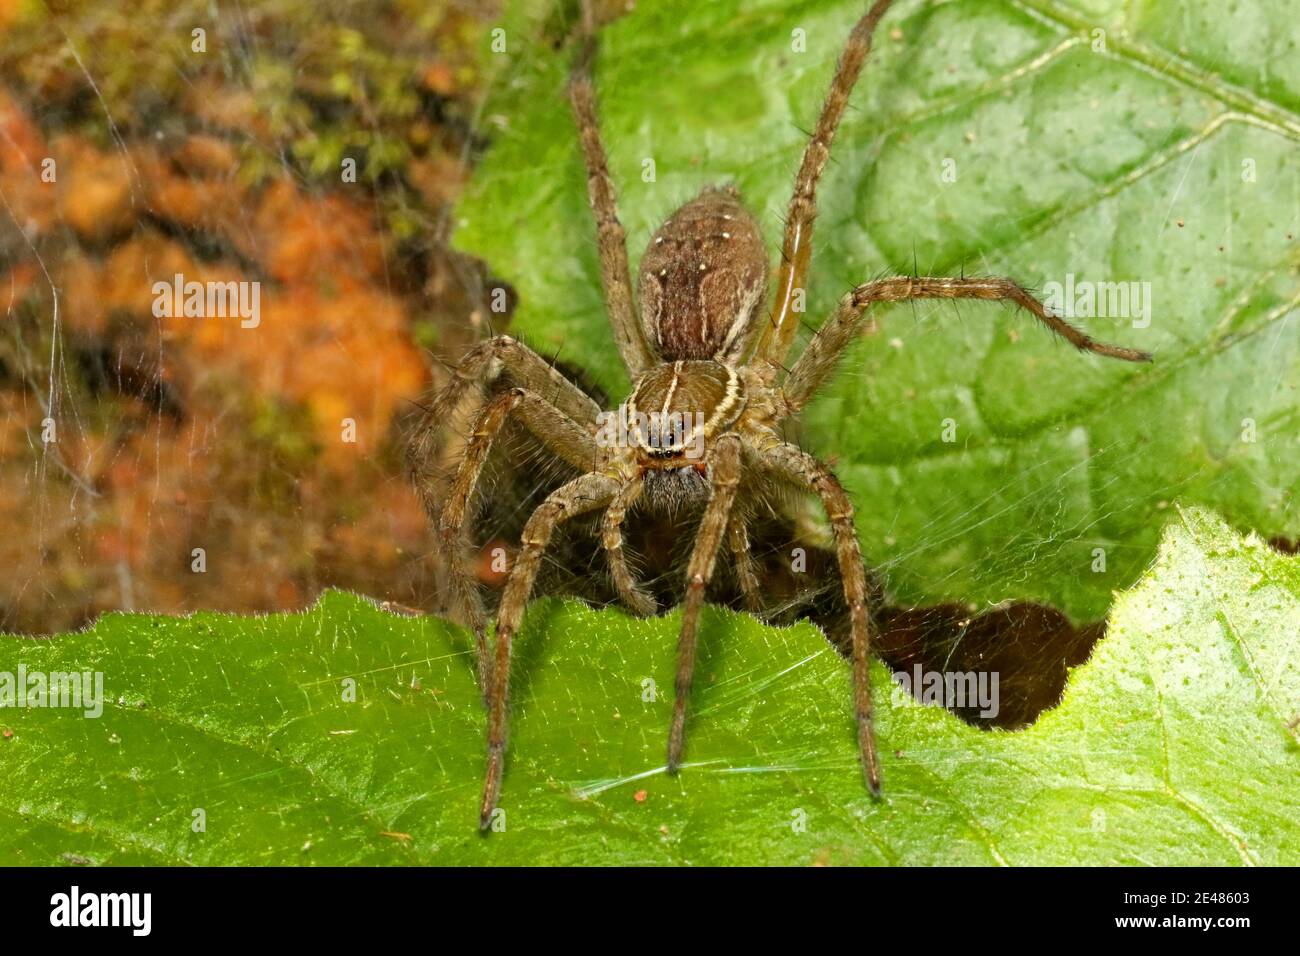 Indian Funnel Web Spider, famille Agelenidae, Ganeshgudi, Karnataka, Inde Banque D'Images